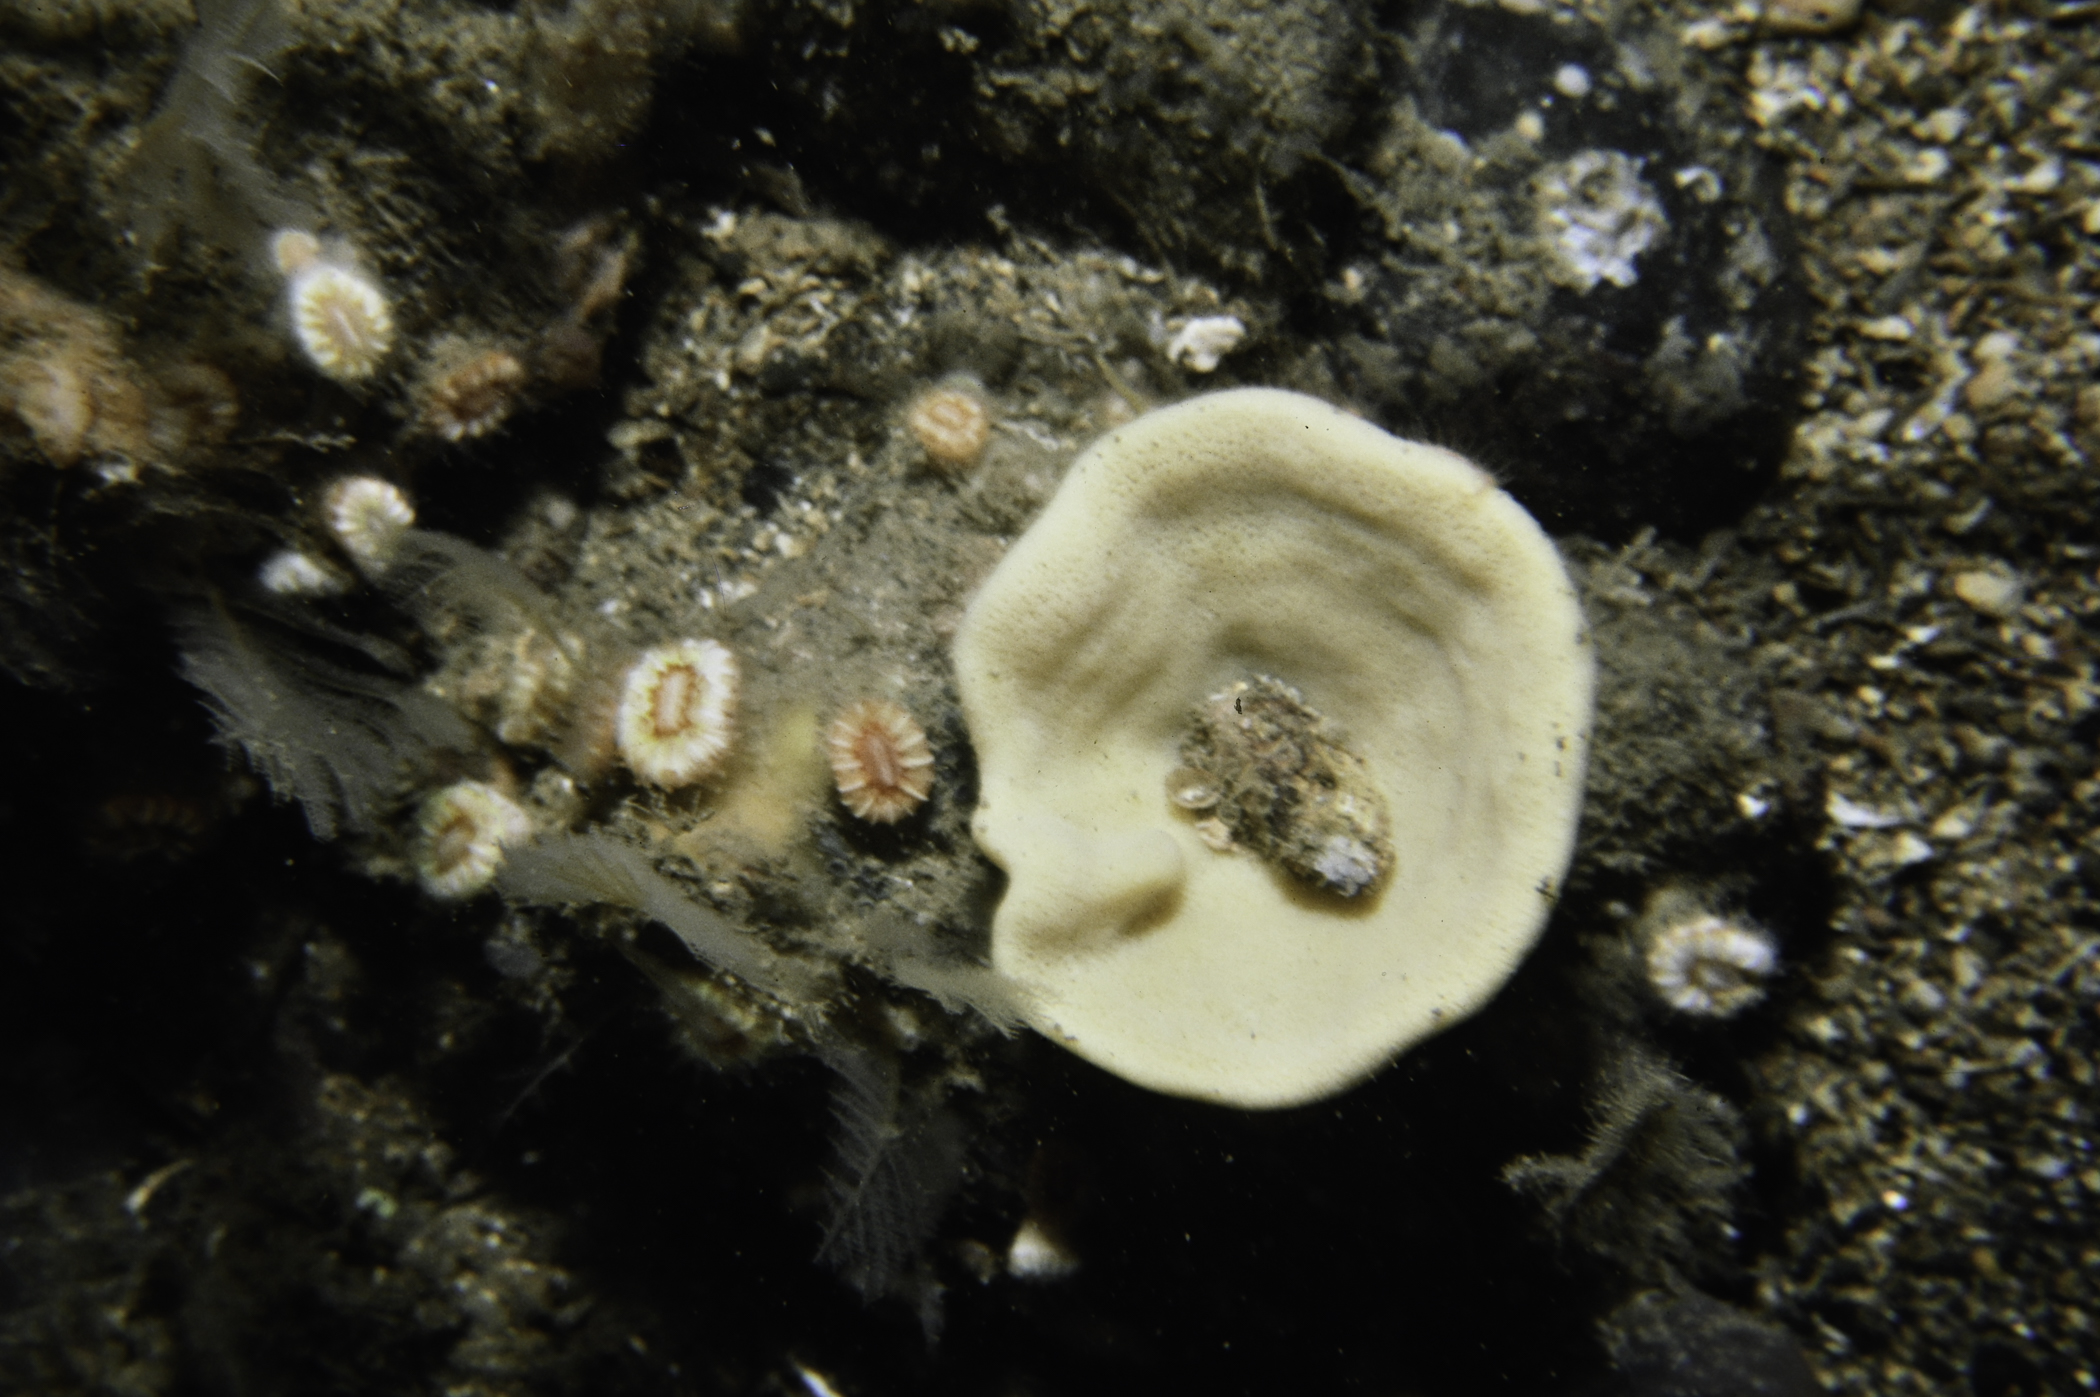 Axinella infundibuliformis, Caryophyllia smithii. Site: East Coast, Rathlin Island. 